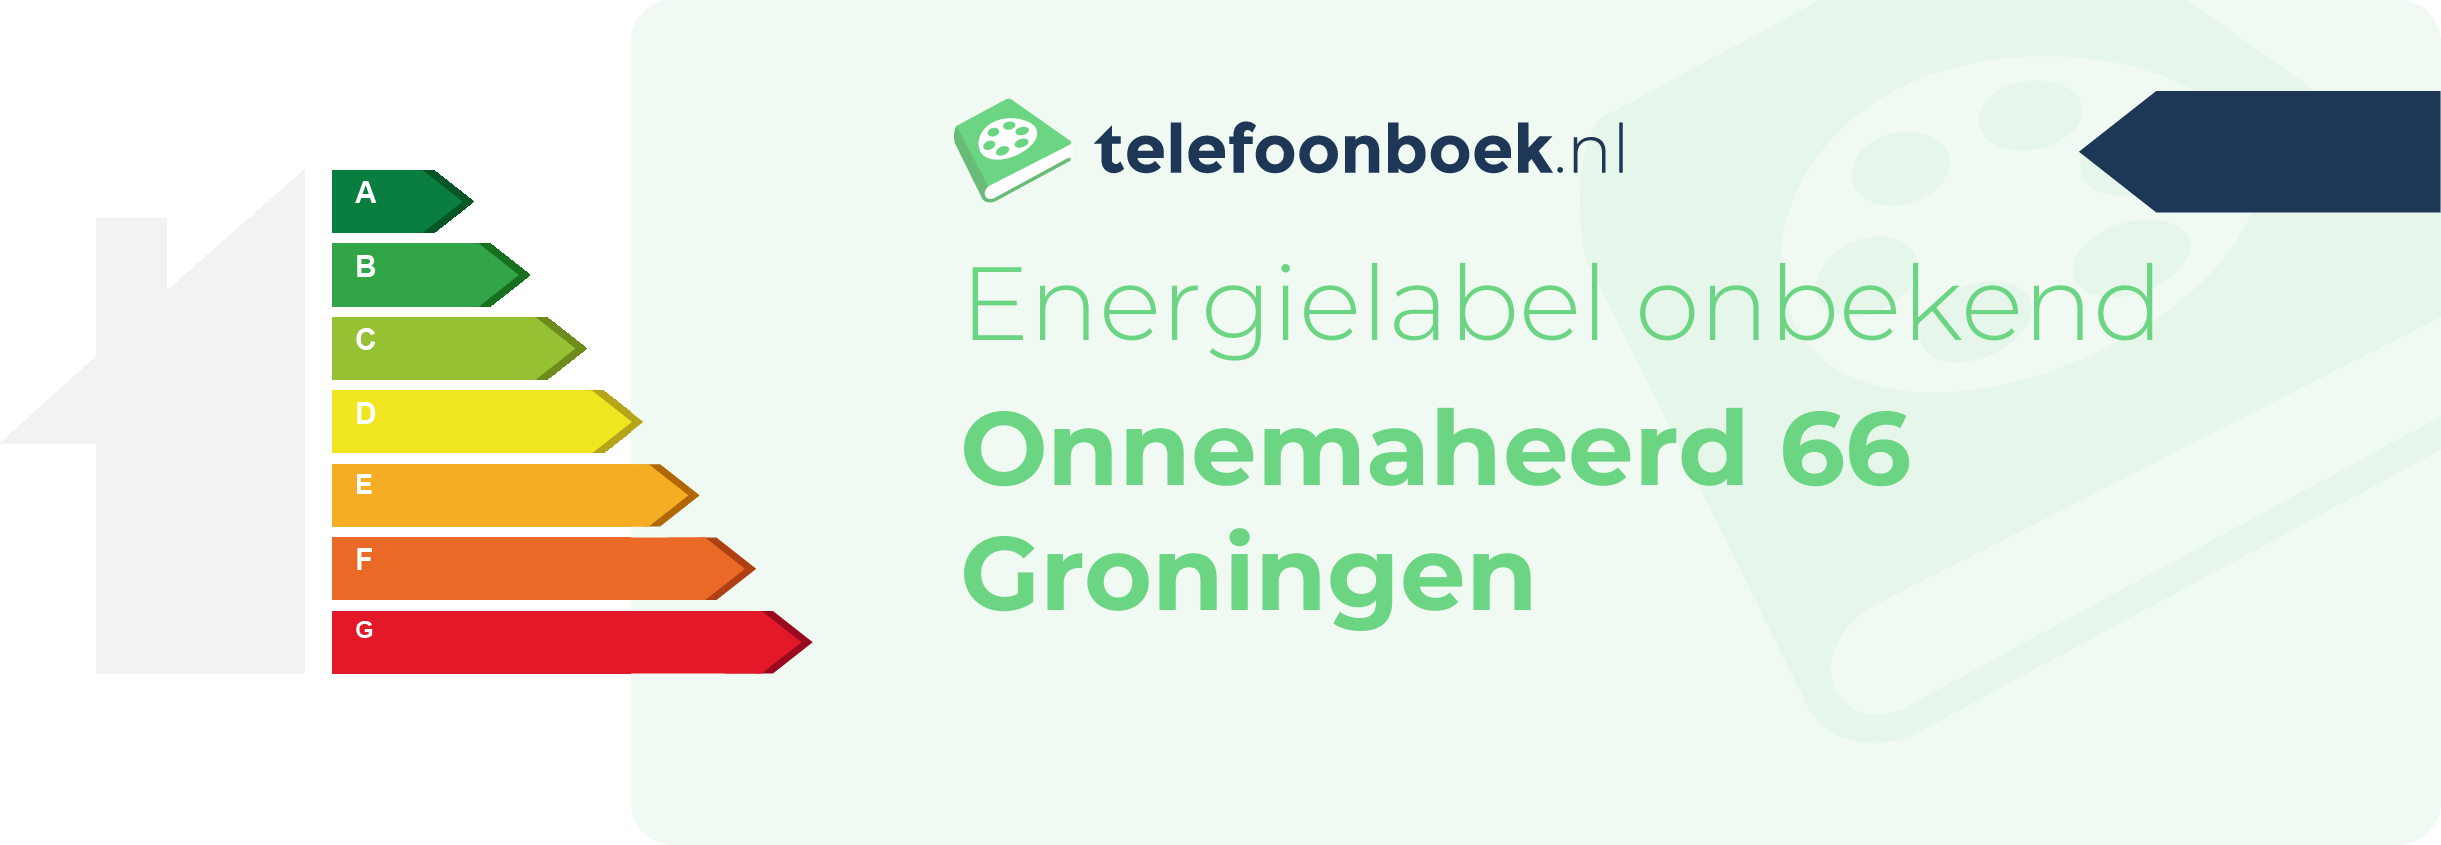 Energielabel Onnemaheerd 66 Groningen